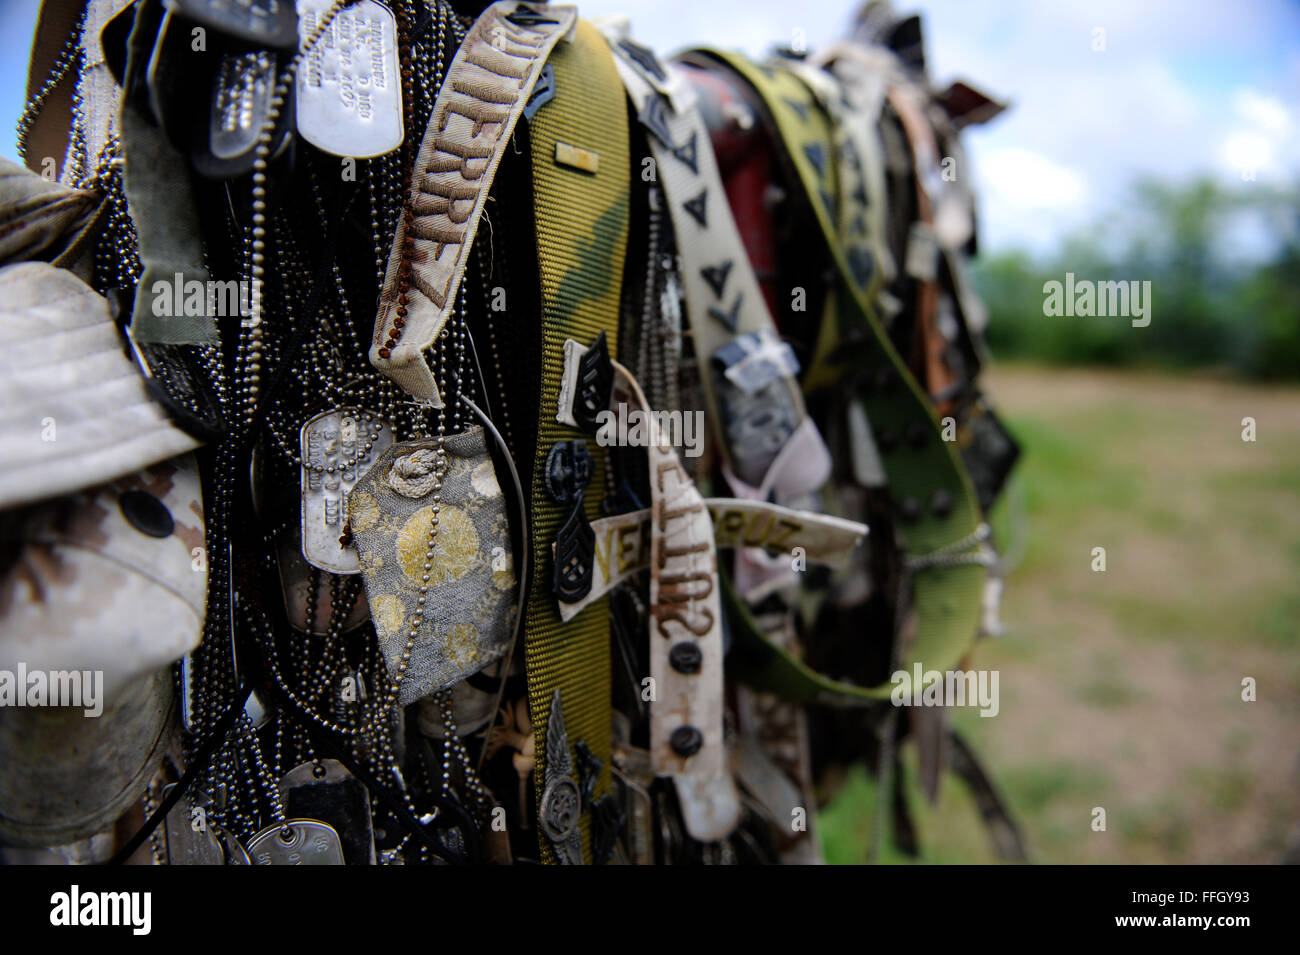 Au sommet du mont Suribachi, Marine Corps rubans insignes de grade, nom, badges, dog tags, ceintures et chapeaux se suspendre à un mémorial aux morts Marines de la Février 1945 La bataille d'Iwo Jima. Banque D'Images